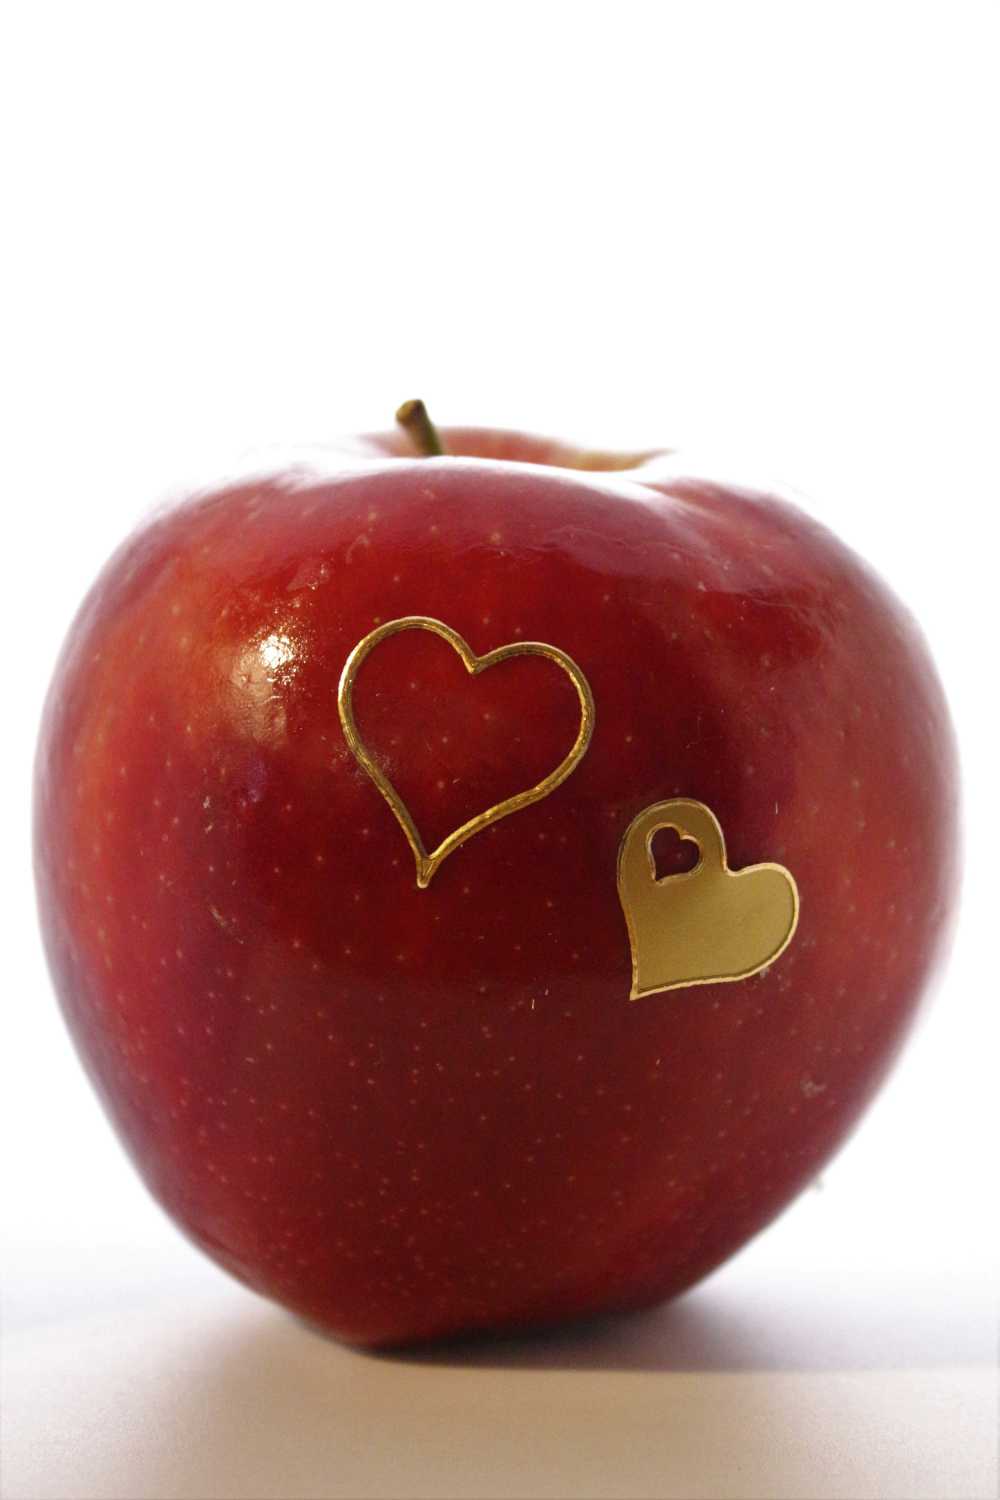 苹果心脏水果健康